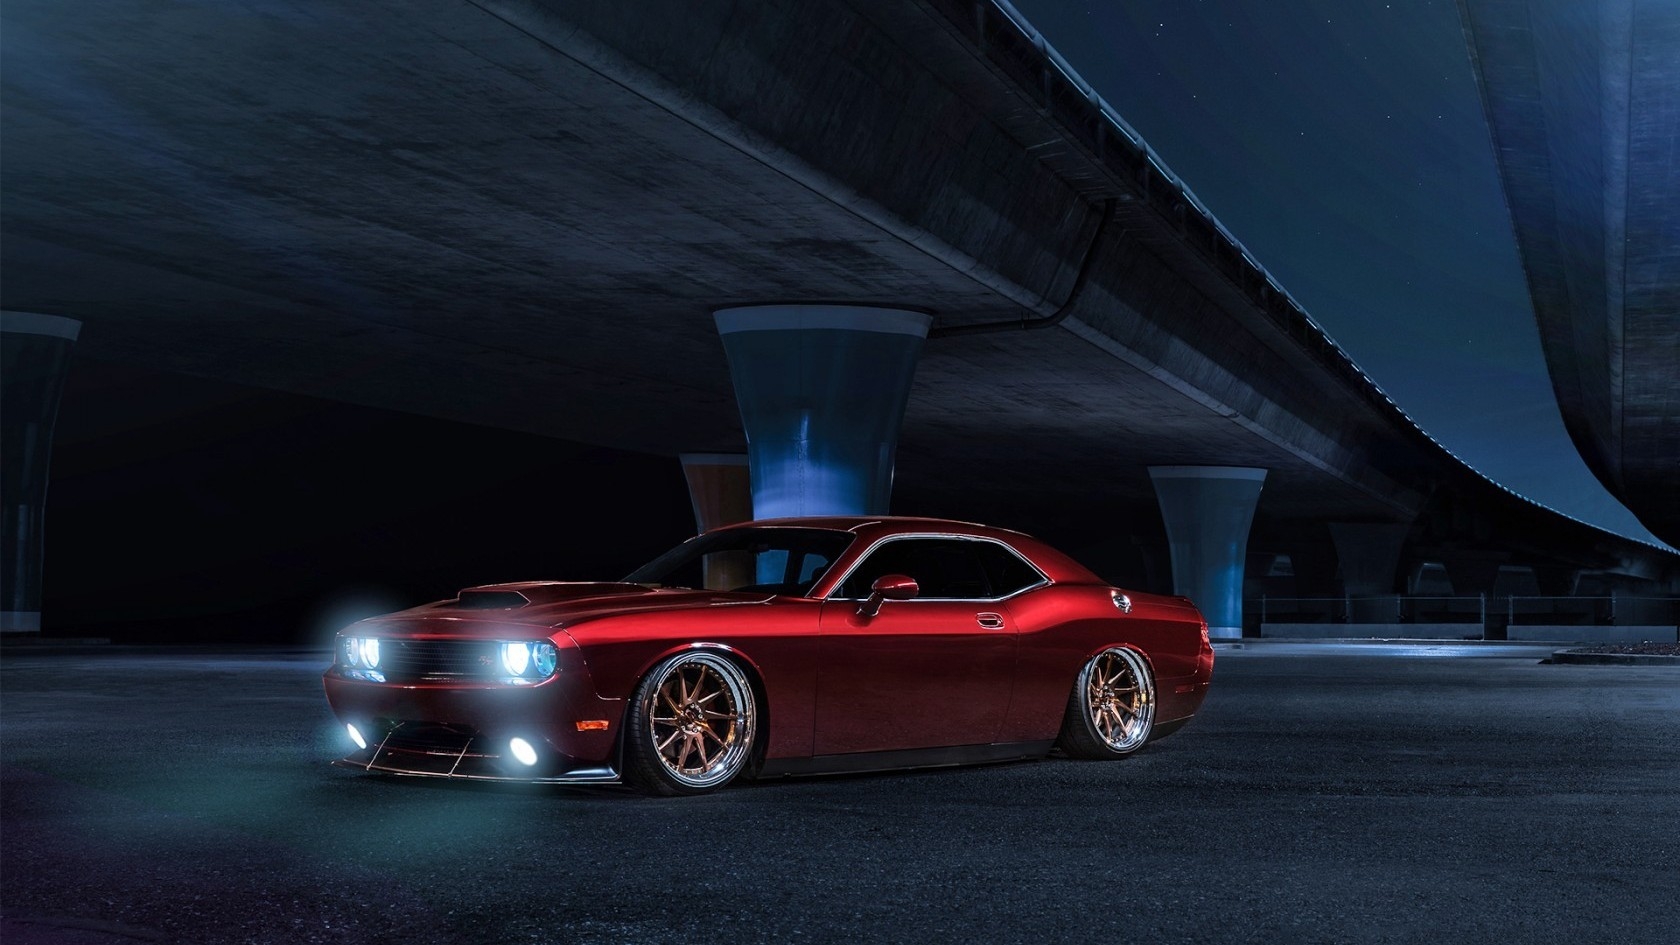 Red Dodge Challenger Avant Garde for 1680 x 945 HDTV resolution